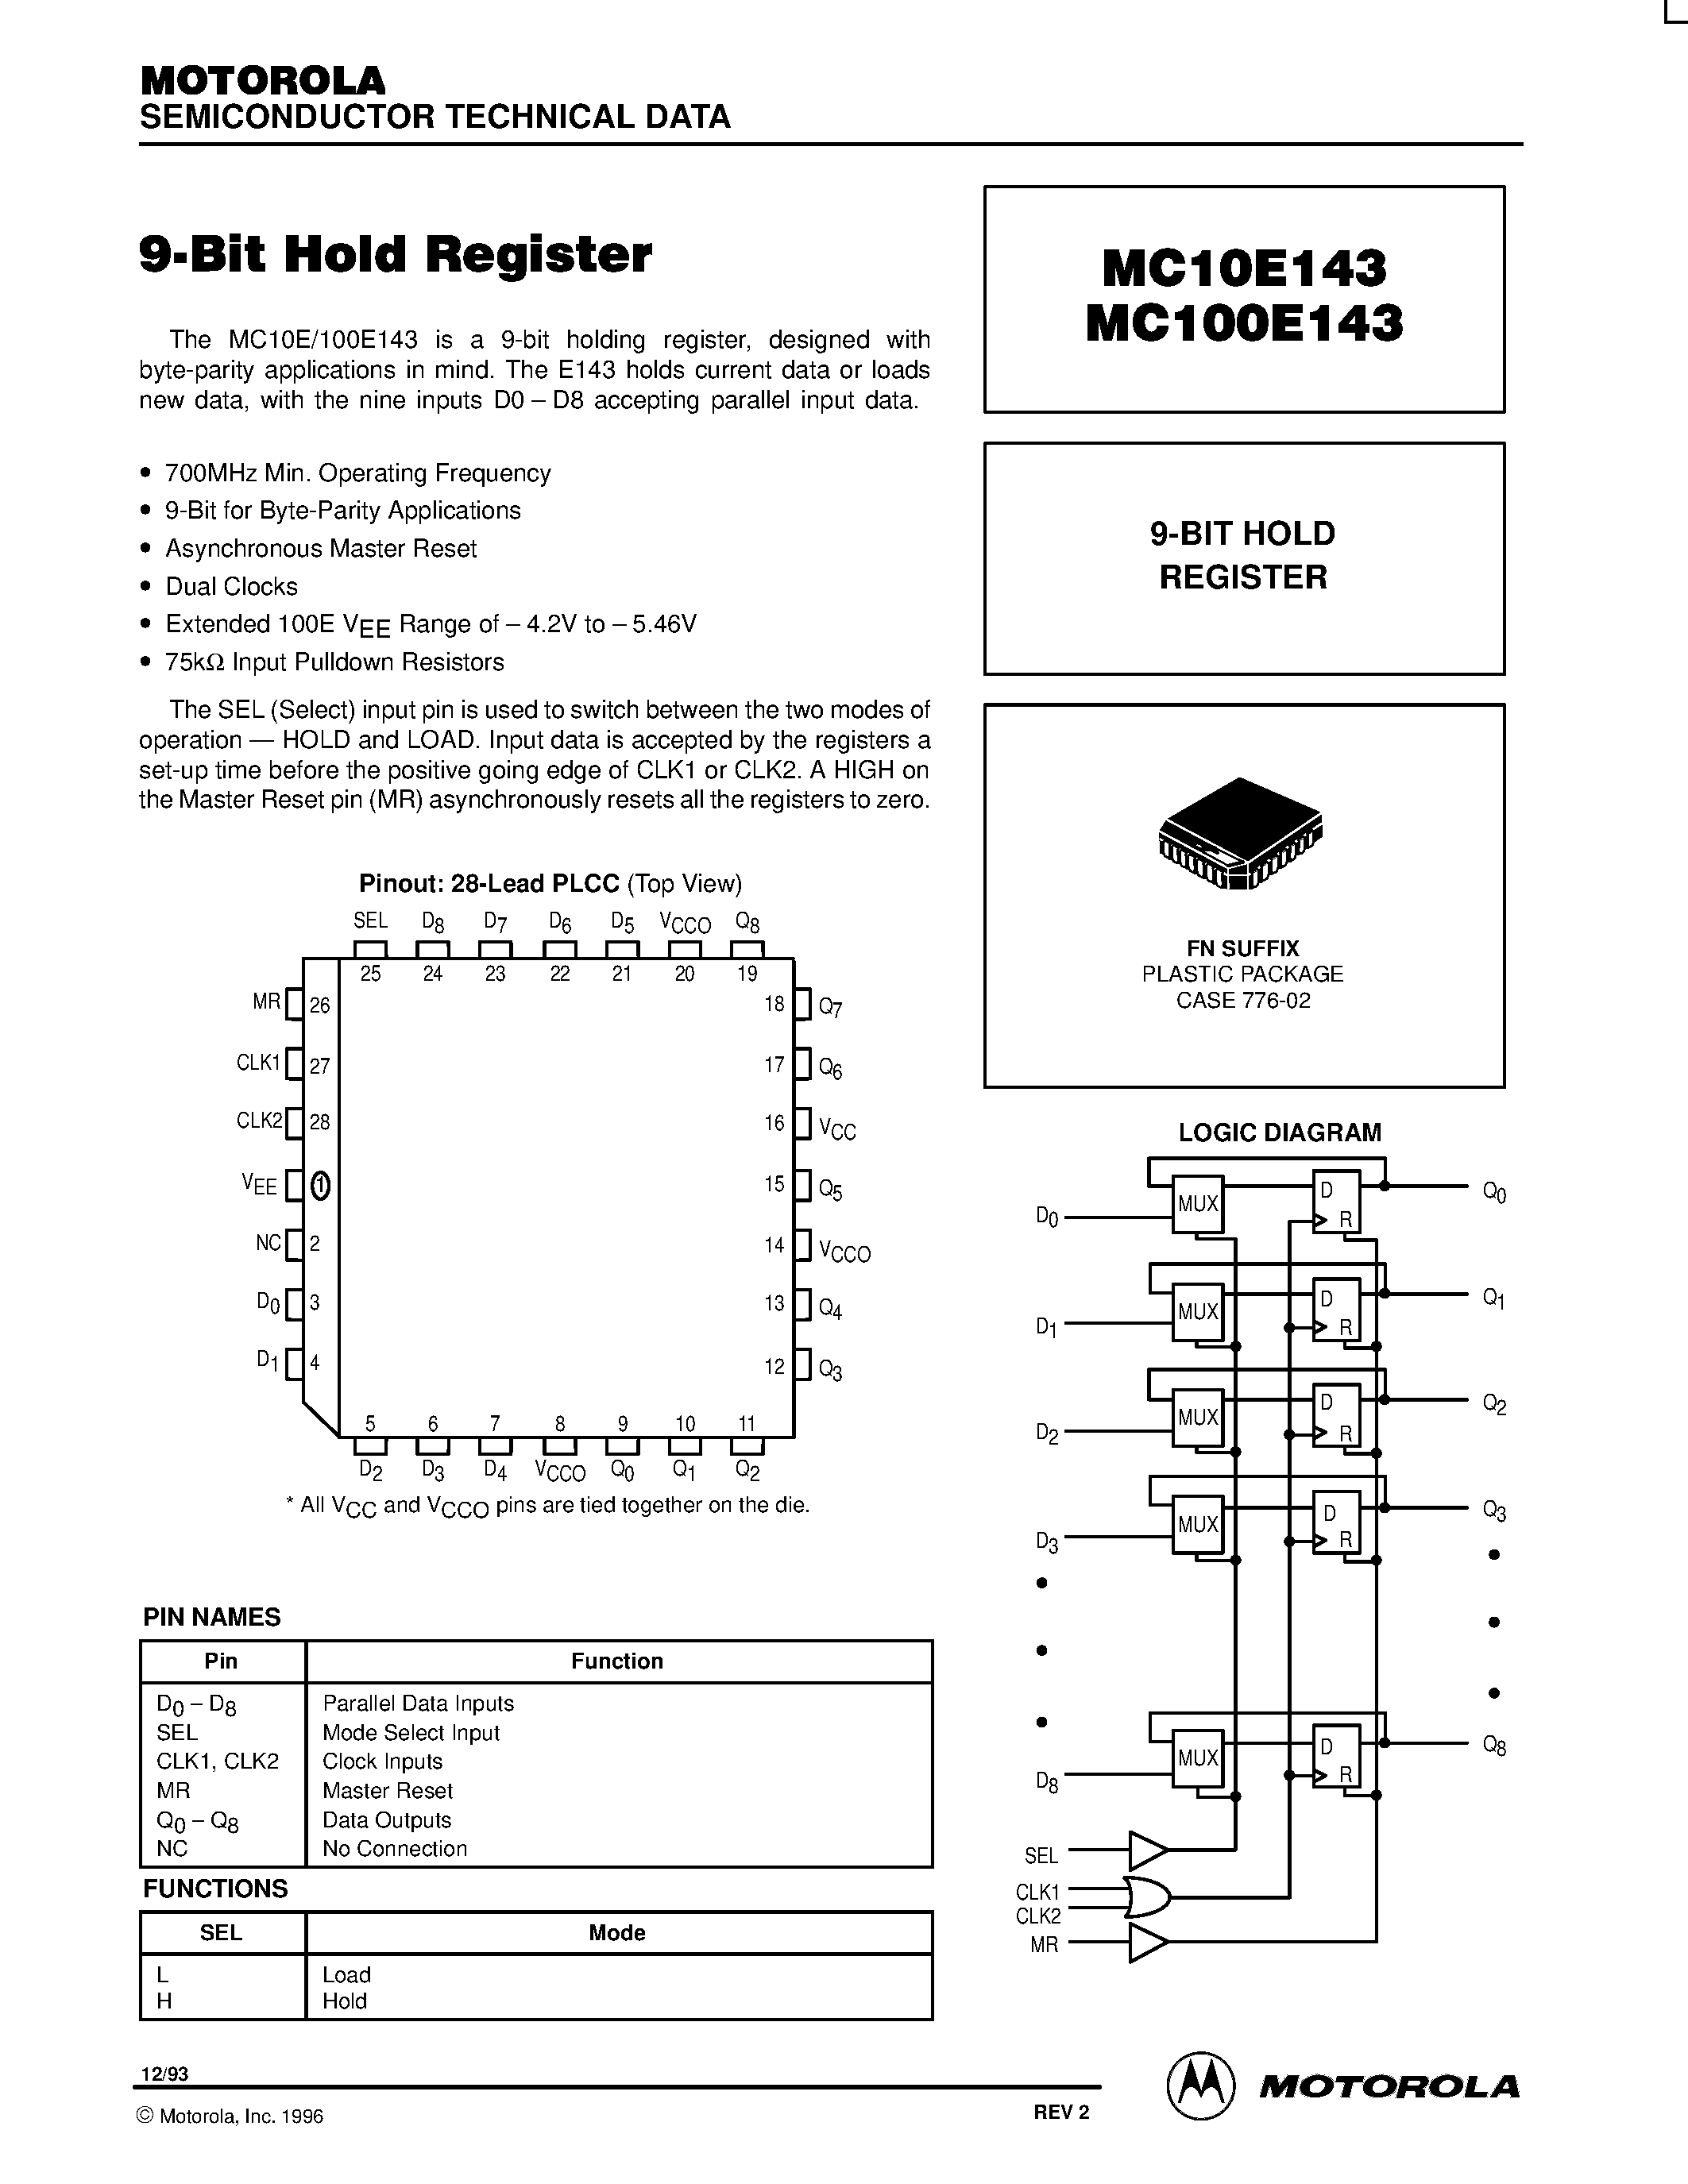 Даташит MC100E143FN - 9-BIT HOLD REGISTER страница 1